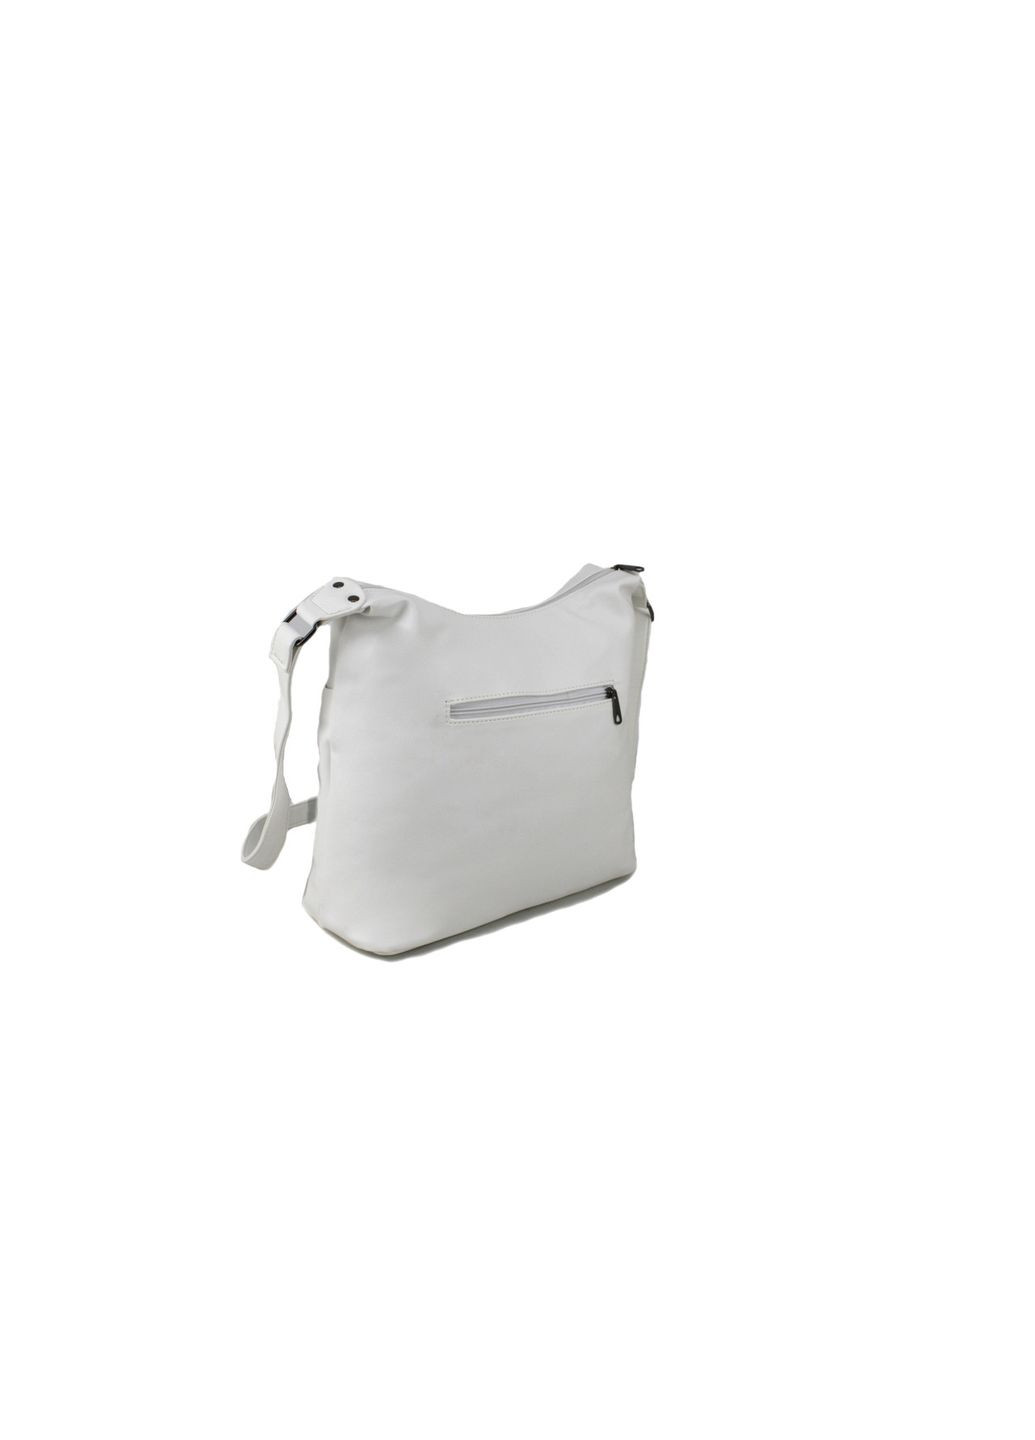 Повседневная женская сумка 63130 белая Voila (290193726)